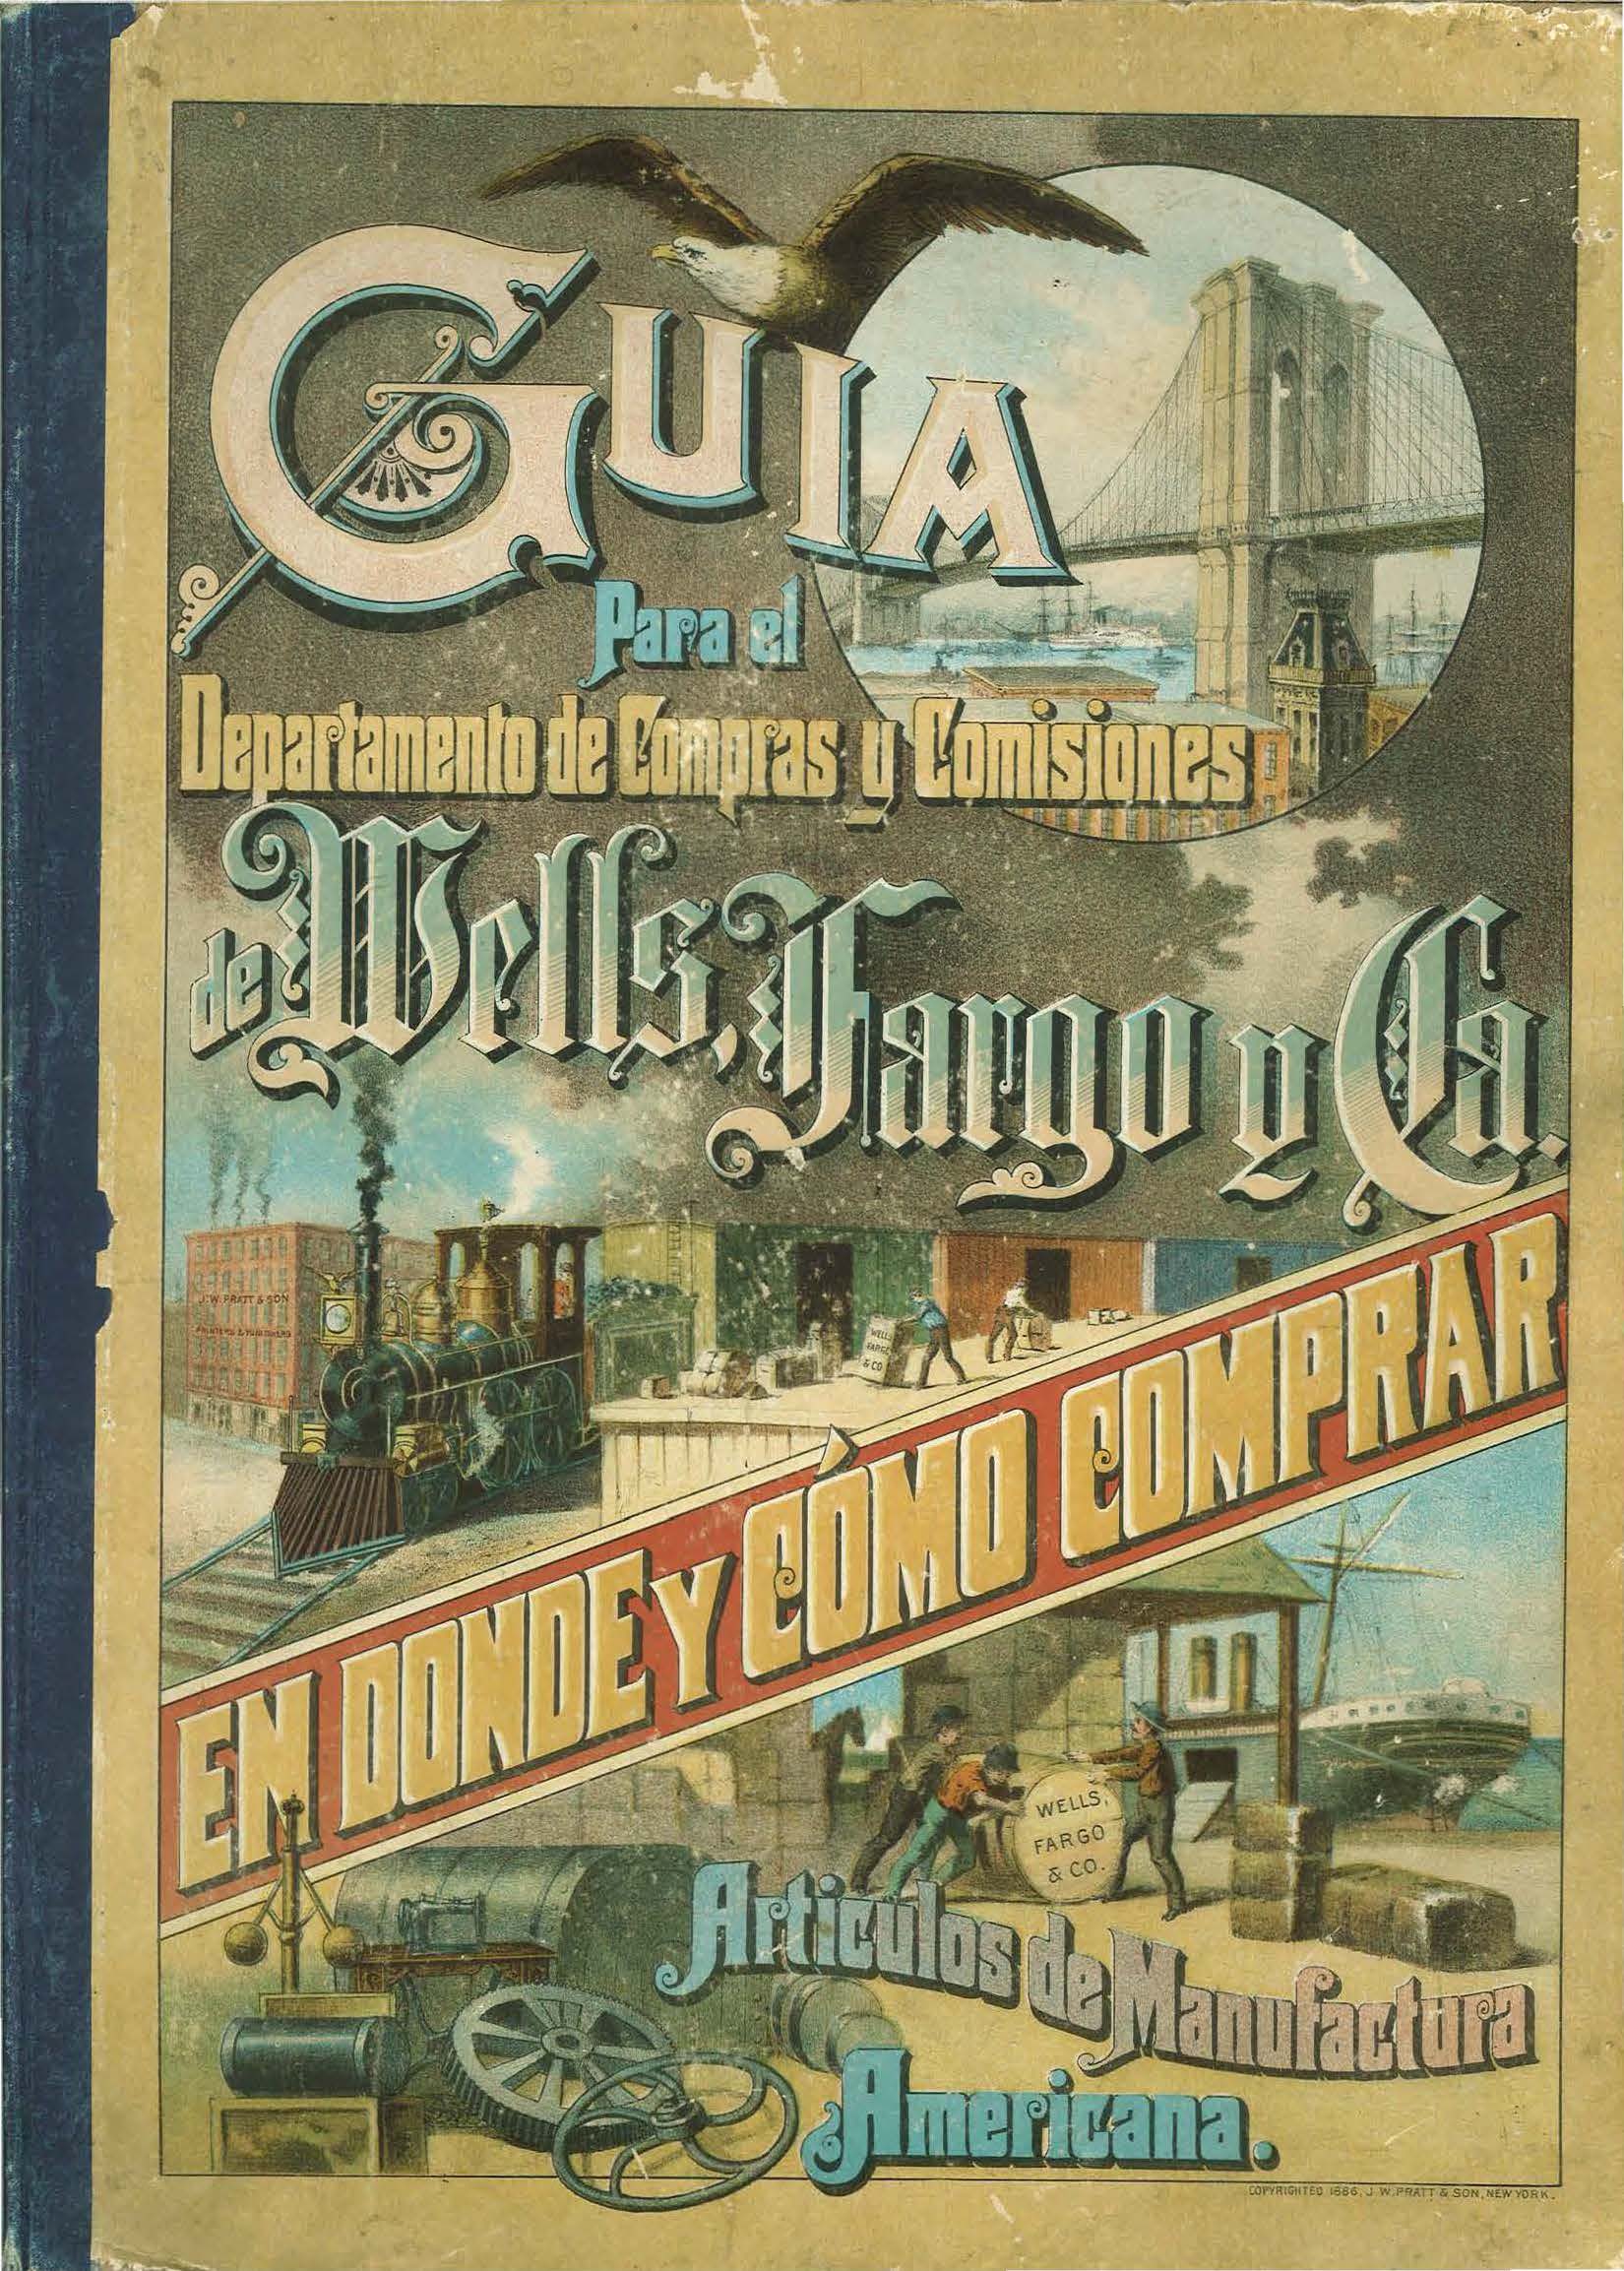 Book cover with title text: Guia Para el Departamento de Compras y Comisiones de Wells, Fargo y Ca. En Donde y Cómo Comprar